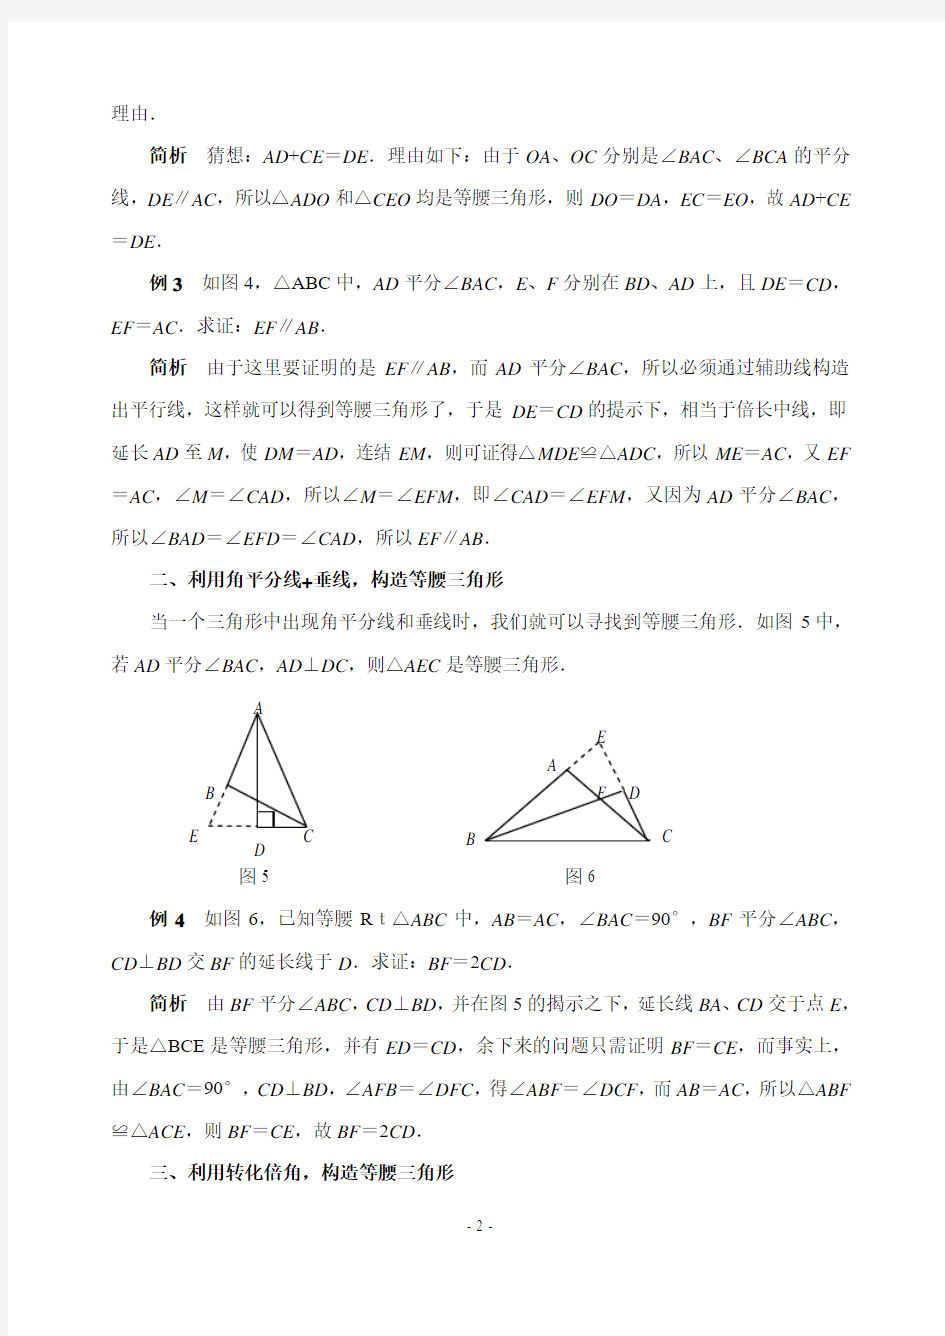 构造等腰三角形解题的常见途径